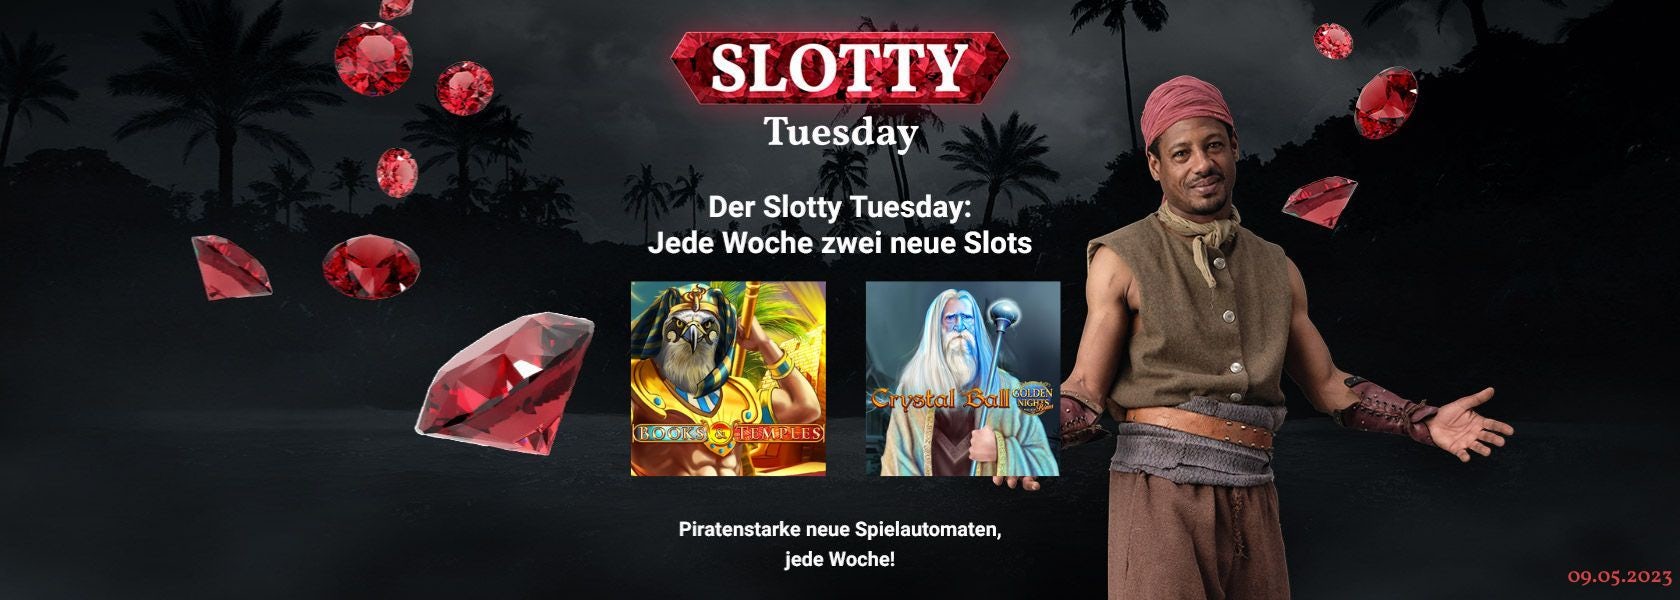 JPI-Header-Slotty-Tuesday-0905